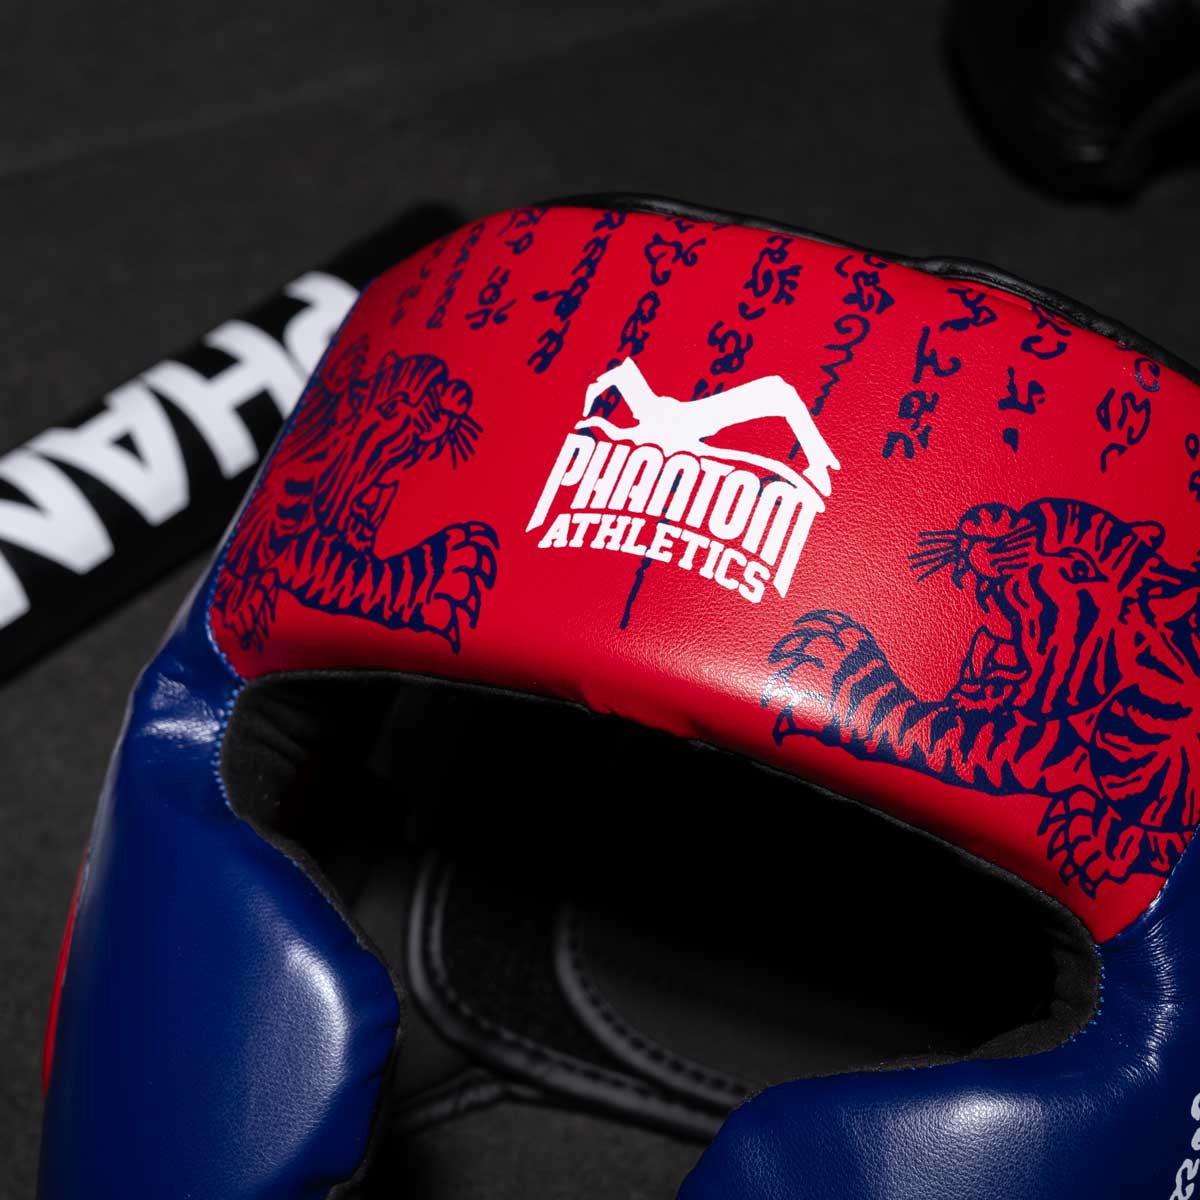 Phantom Muay Thai Kopfschutz für Thaiboxen und MMA Sparring, Wettkampf und Training. Im traditionellen Sak Yant Design und der Farbe Blau/Rot.